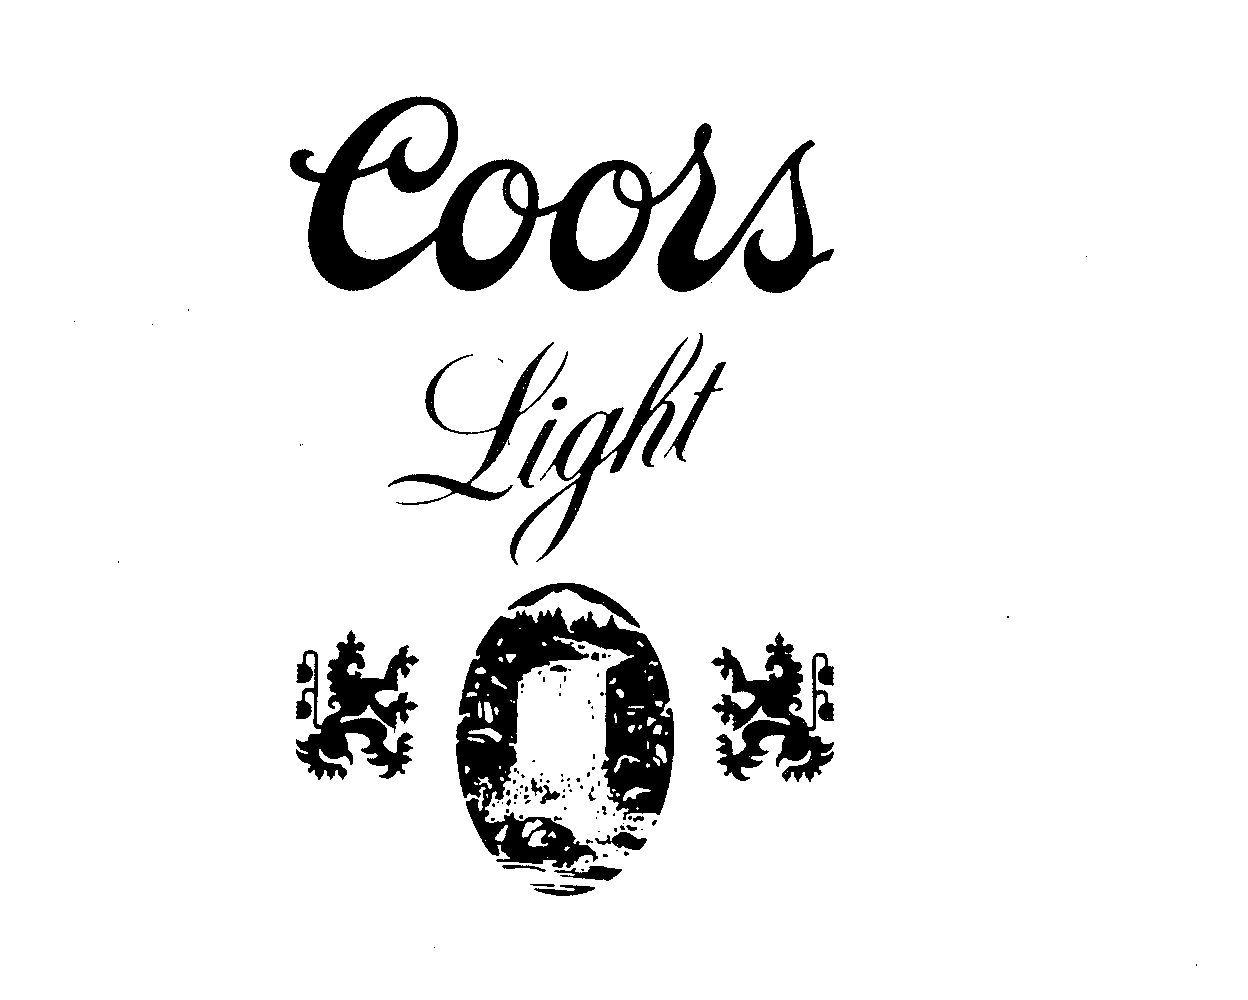  COORS LIGHT